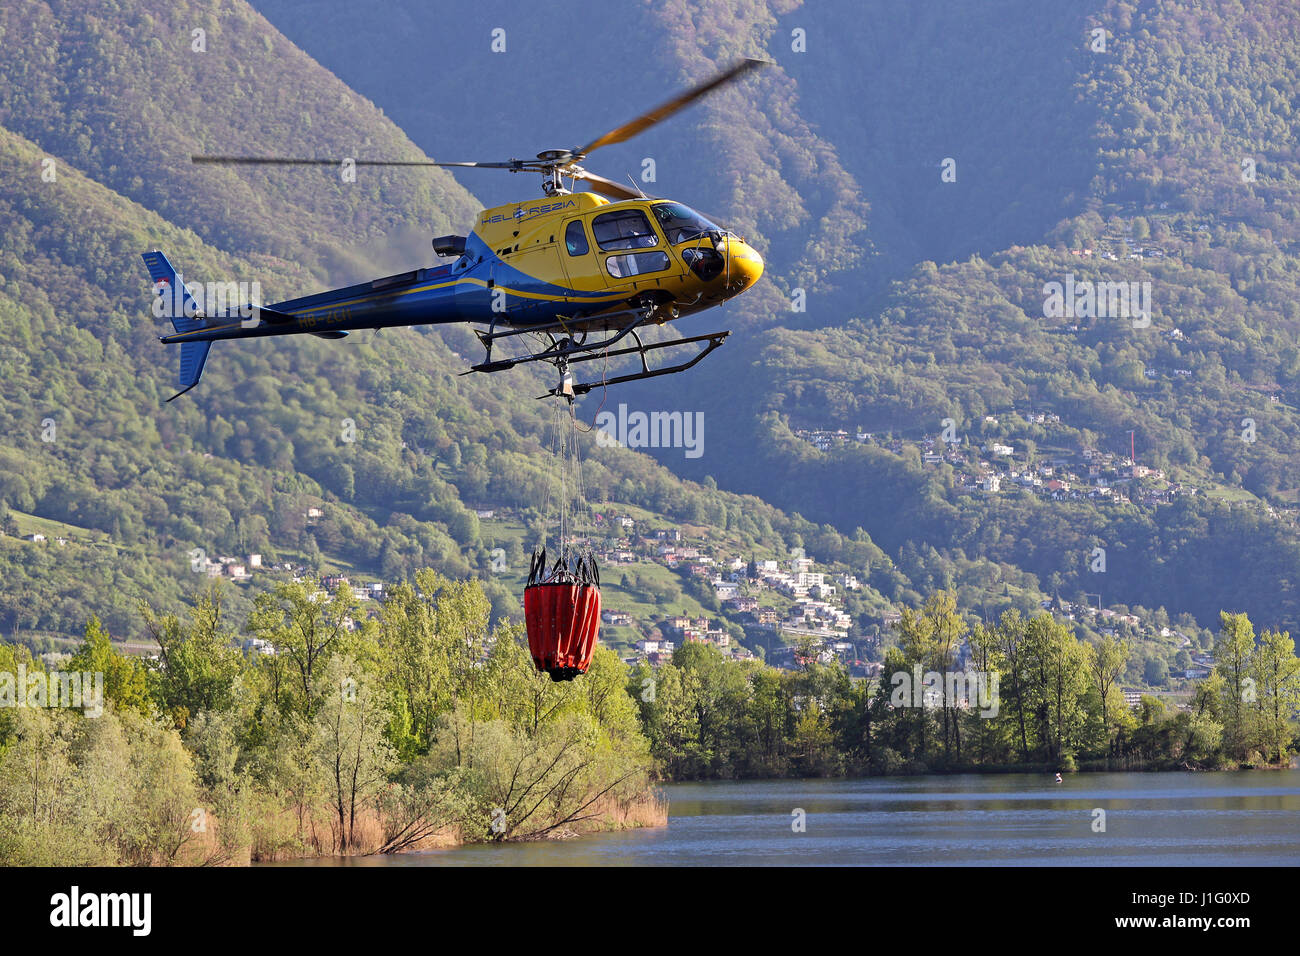 Les efforts de lutte contre l'incendie sont en cours avec des hélicoptères pour éteindre les incendies de forêts au-dessus de Gordola, Tessin, Suisse, le 19 avril, 2017 Banque D'Images